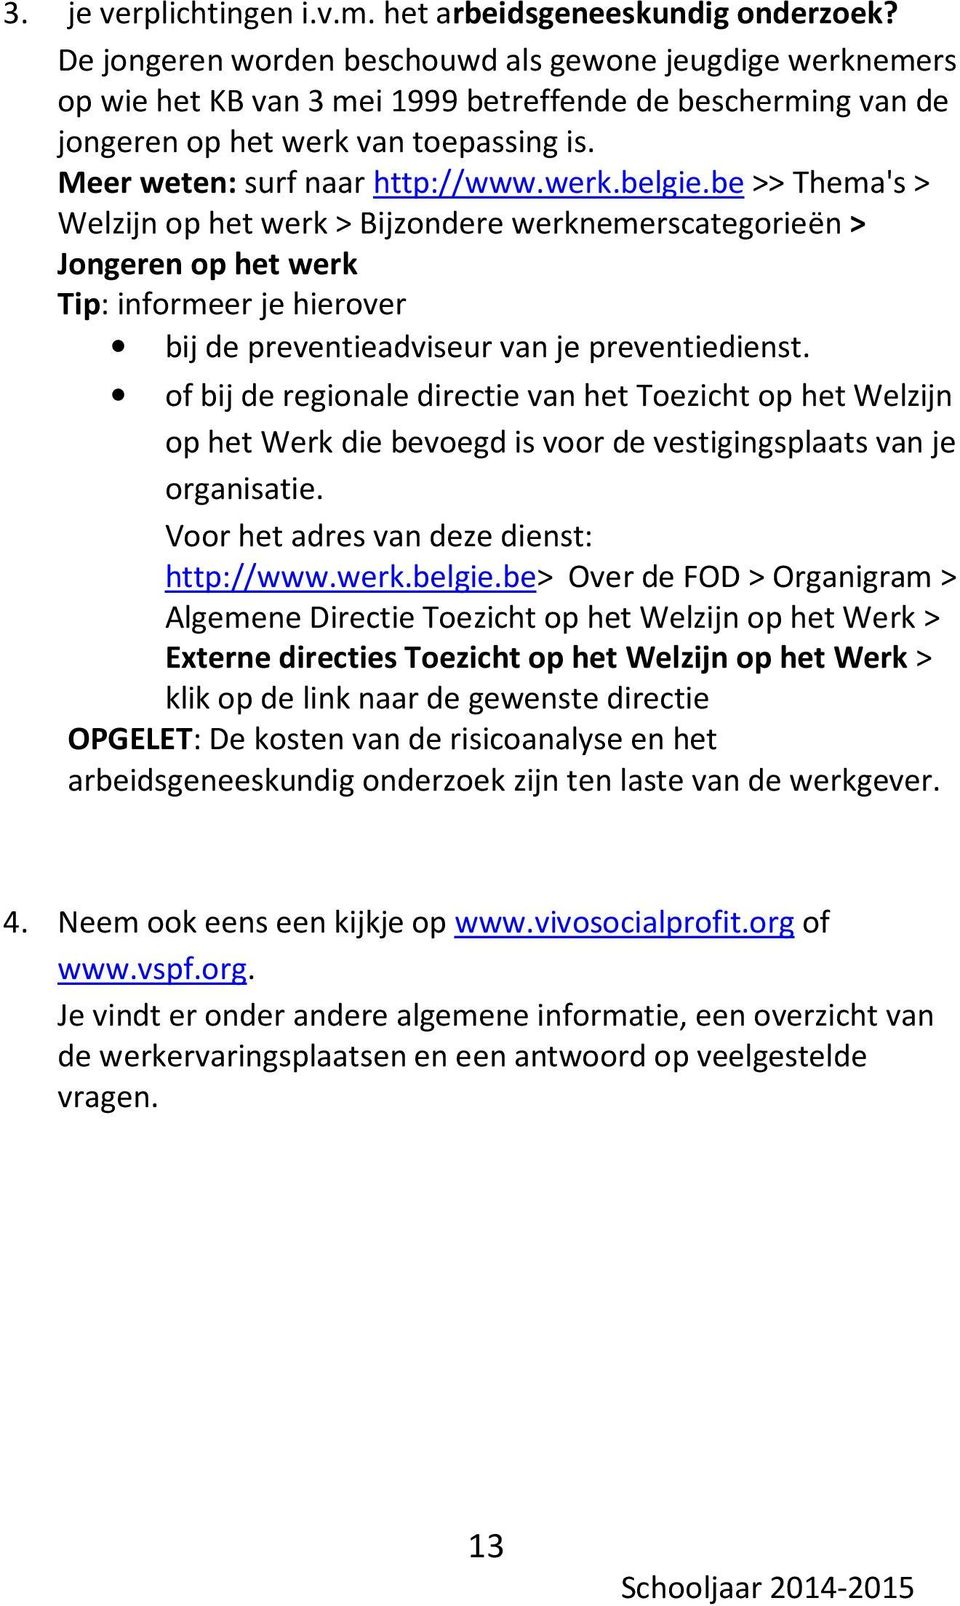 werk.belgie.be >> Thema's > Welzijn op het werk > Bijzondere werknemerscategorieën > Jongeren op het werk Tip: informeer je hierover bij de preventieadviseur van je preventiedienst.